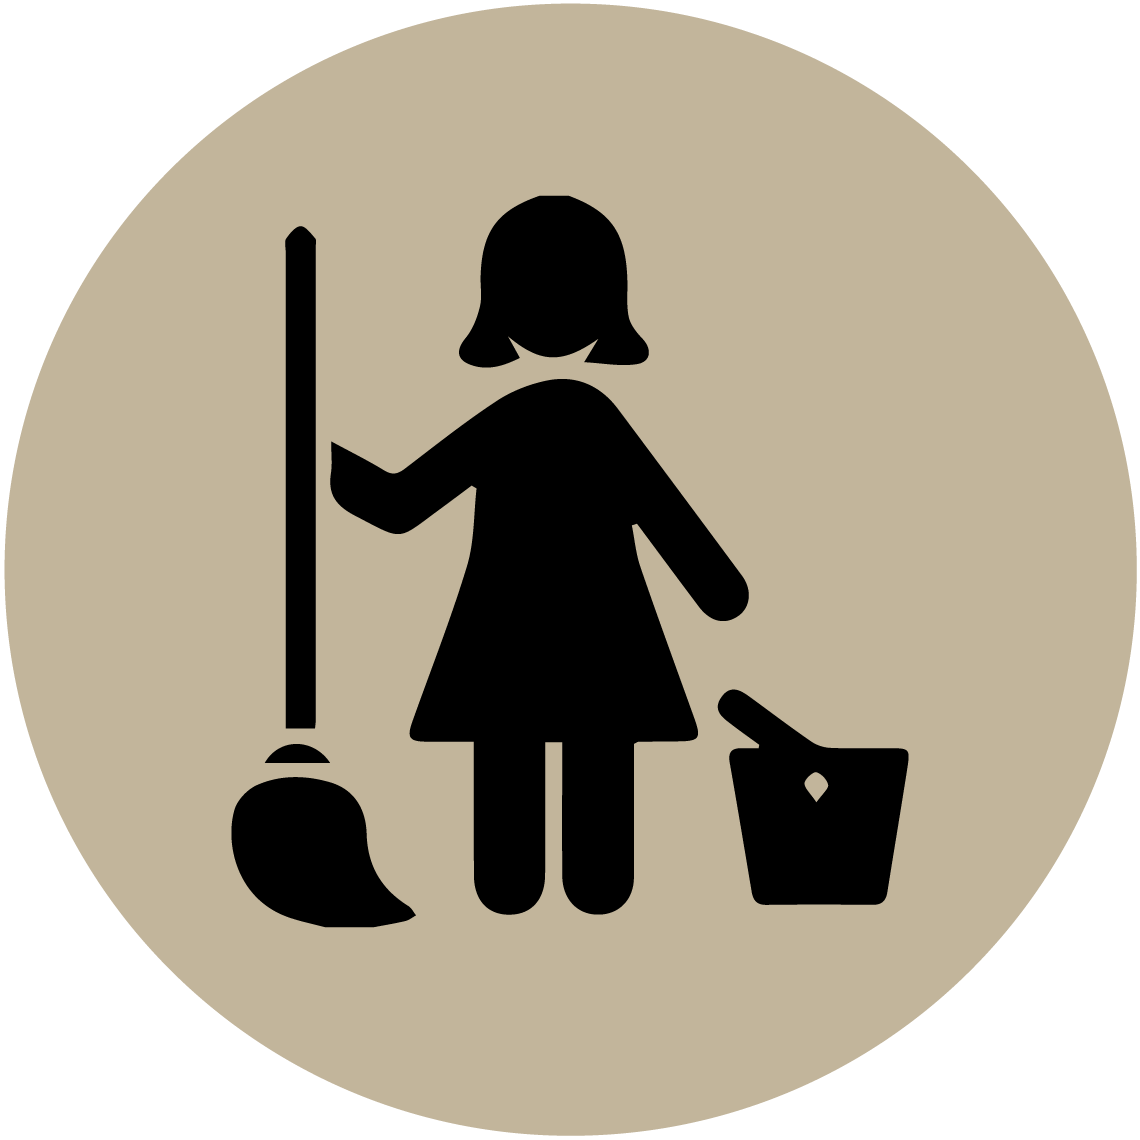 Pilgrim's Cleanomatic Services